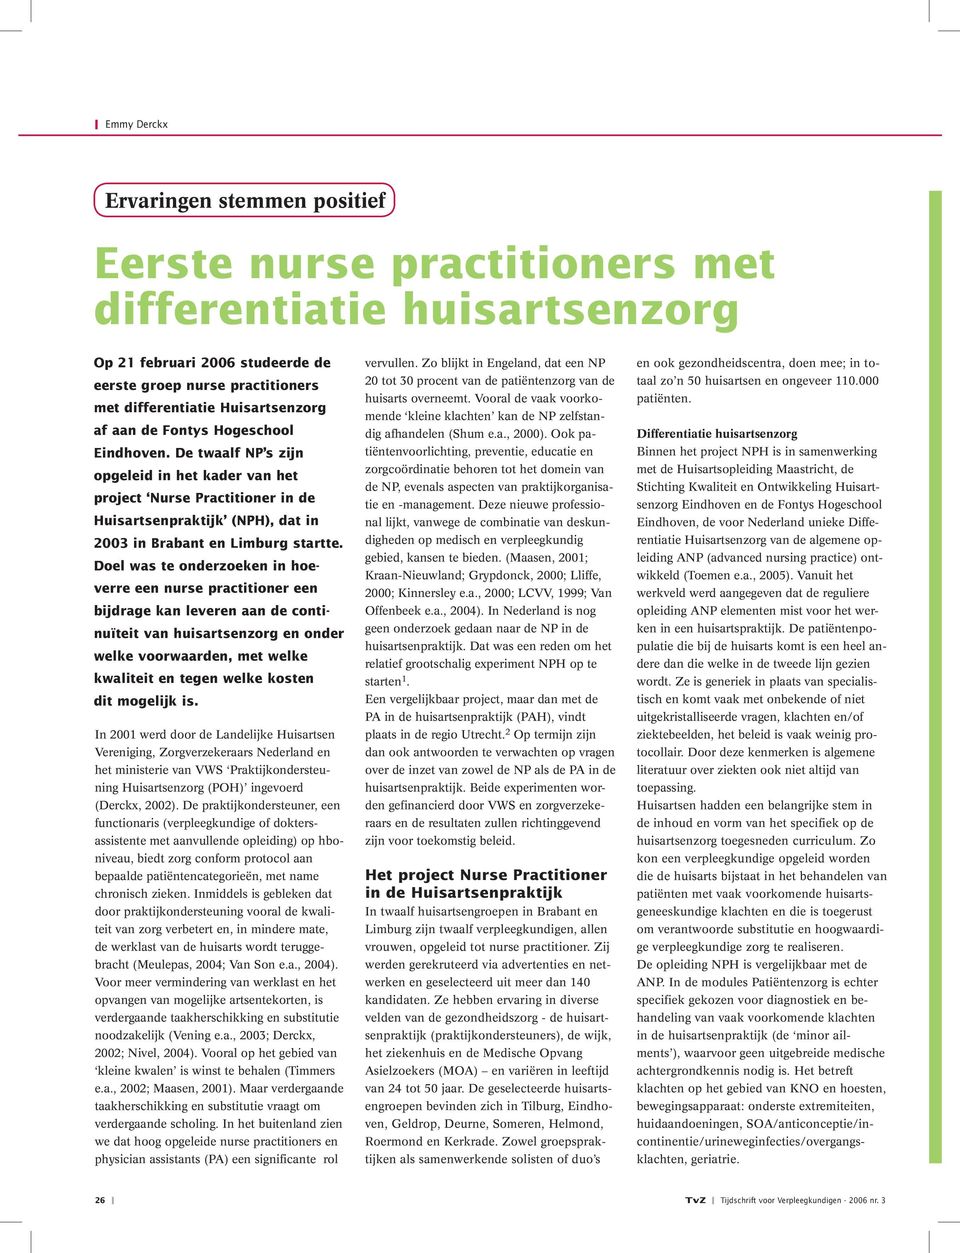 De twaalf NP s zijn opgeleid in het kader van het project Nurse Practitioner in de Huisartsenpraktijk (NPH), dat in 2003 in Brabant en Limburg startte.